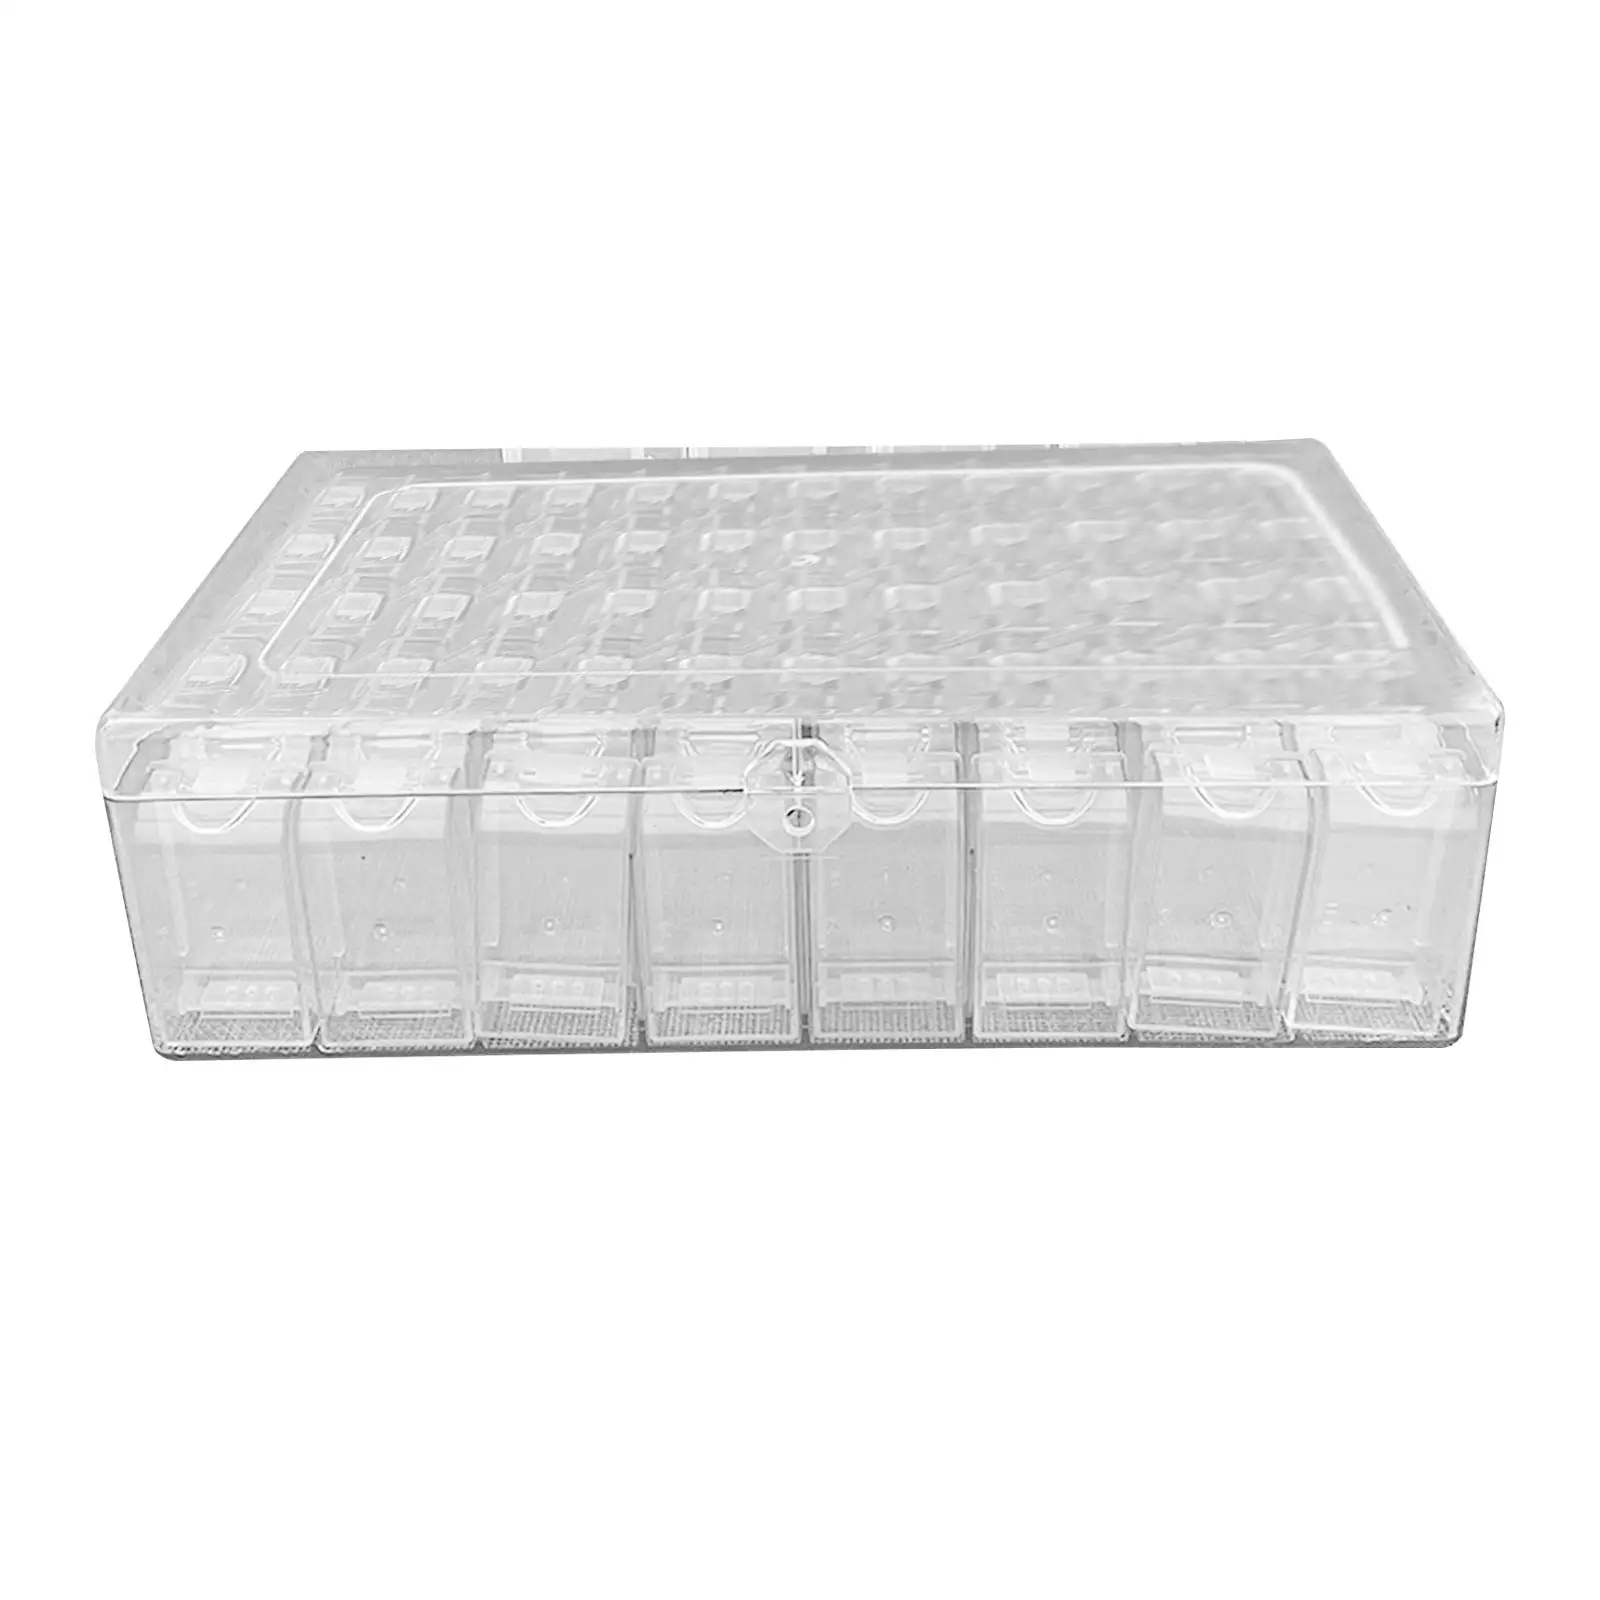 Коробка-органайзер для вышивания 64 сетки С лотком для алмазной живописи, футляр для хранения контейнеров для хранения бусин, набор для вышивания украшений из лент. 0